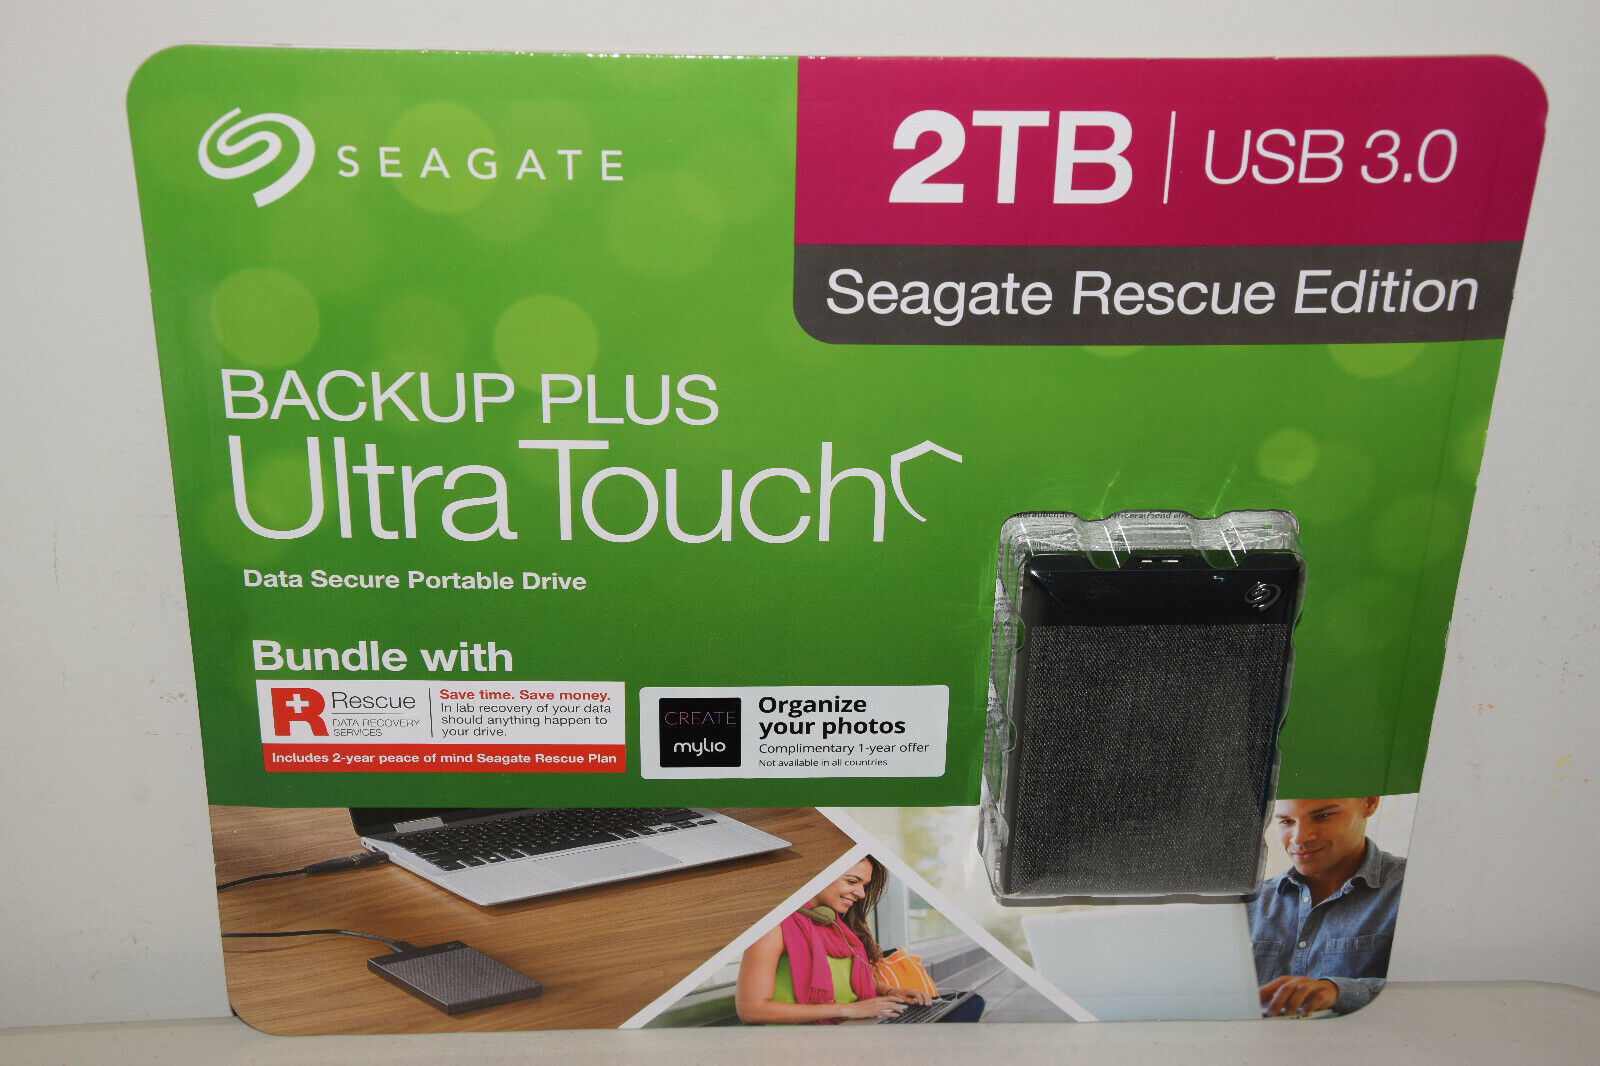 Seagate Backup Plus Ultra Touch 2TB USB 3 Rescue Edition Data Sec Portable Drive